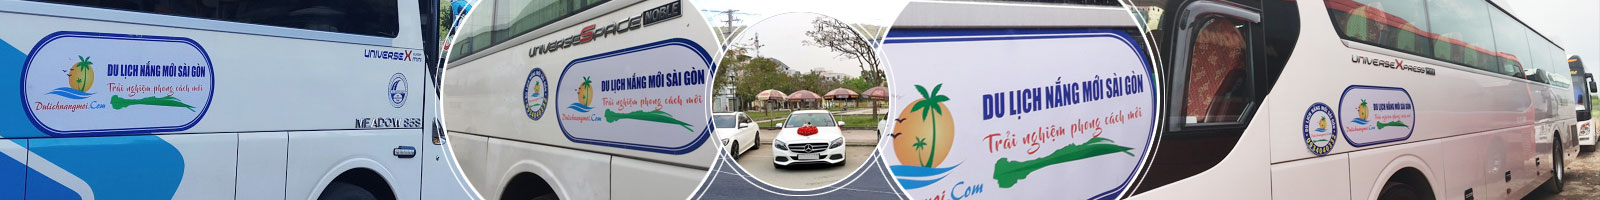 Cho thuê xe du lịch 45 chỗ tại Đà Nẵng - Giá rẻ uy tín